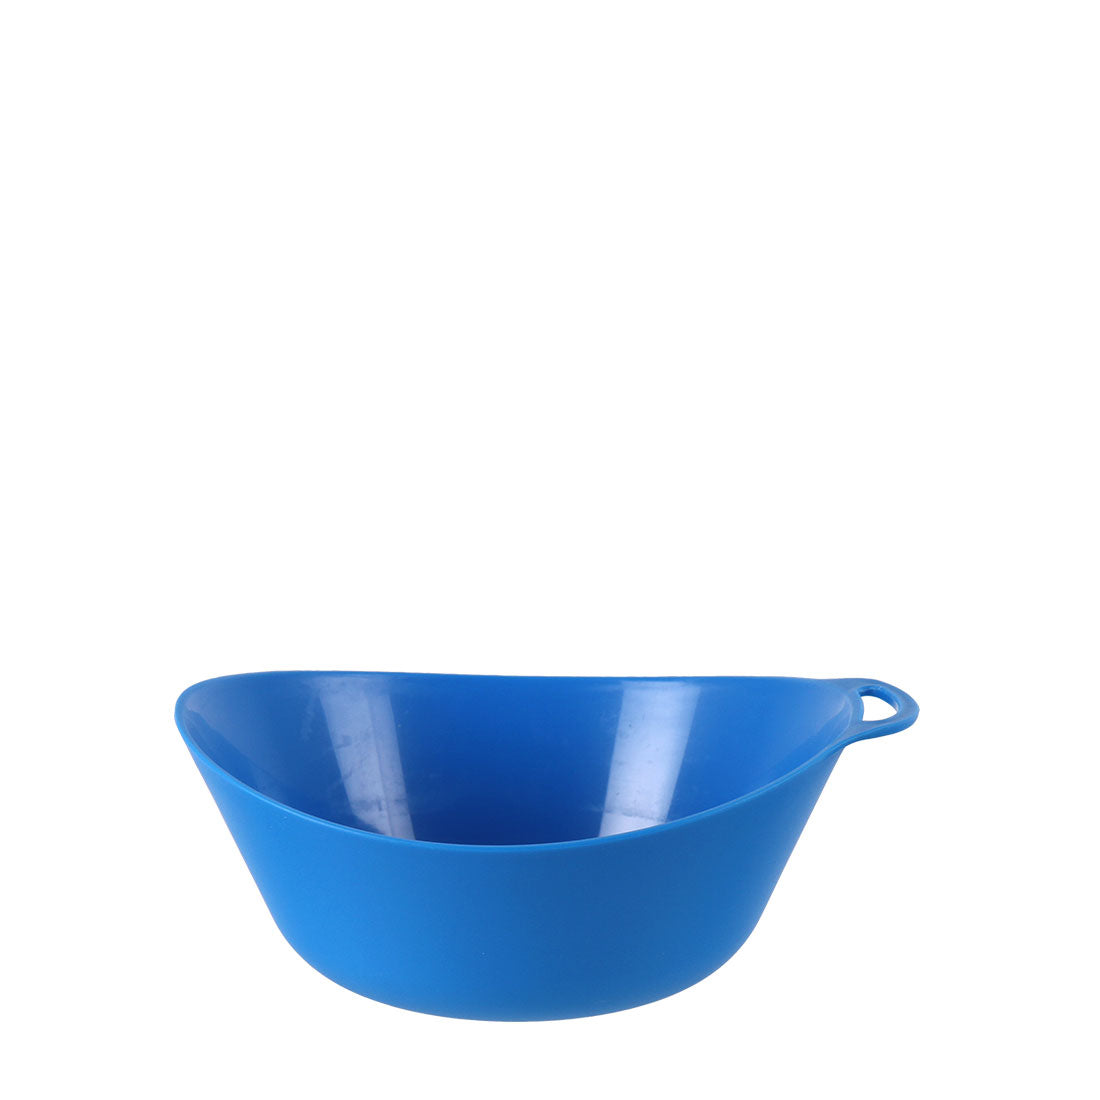 Ellipse Camping Bowl - variant[Blue]